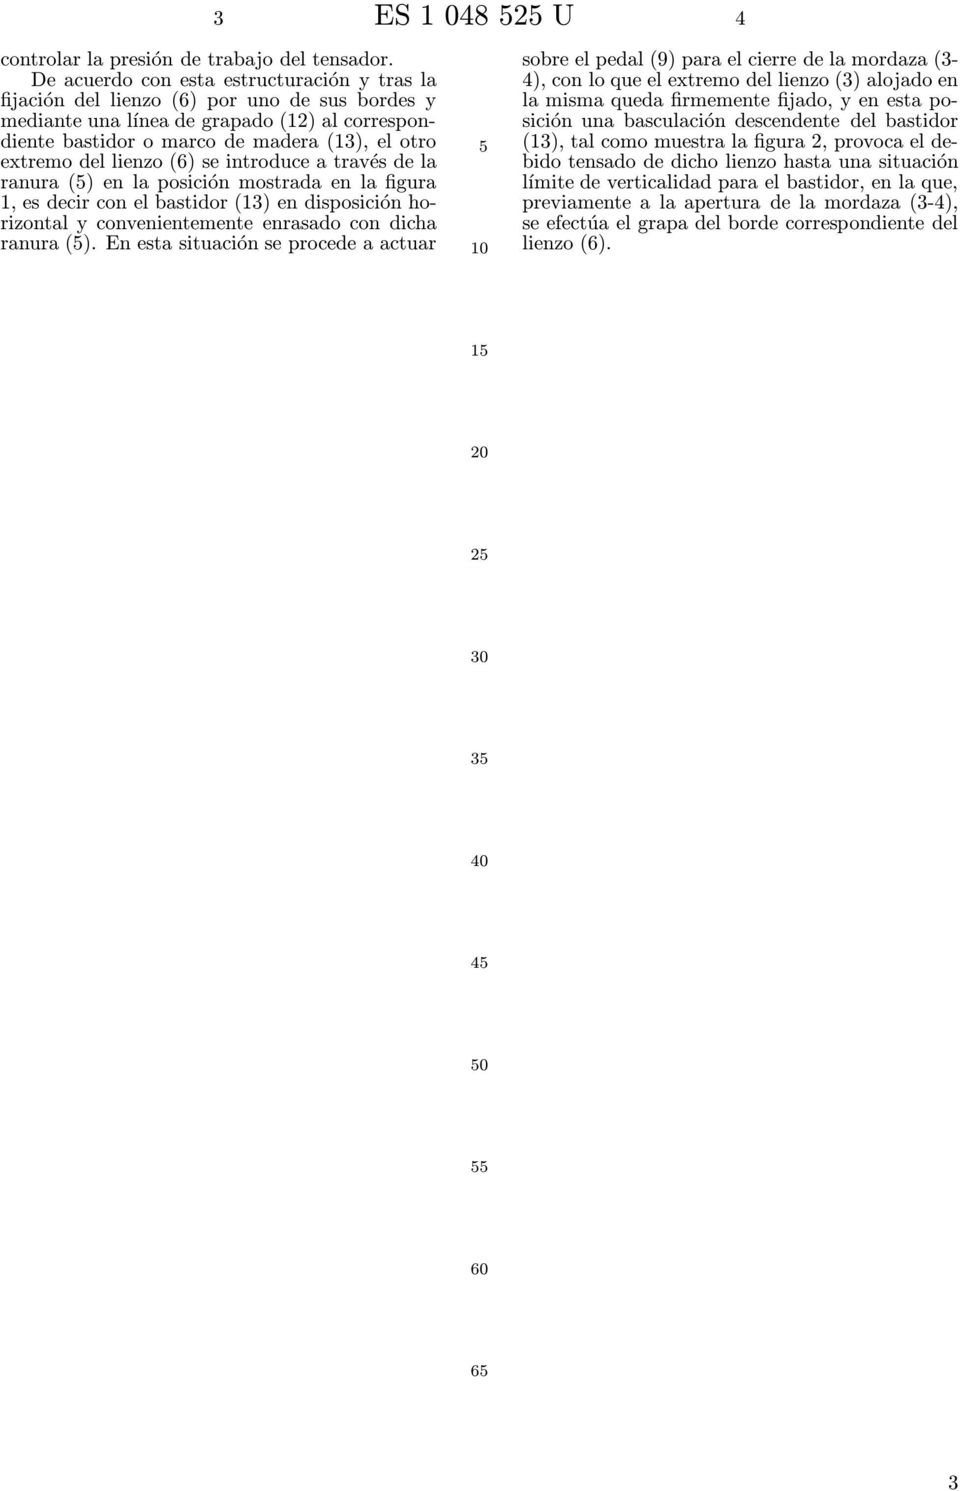 lienzo (6) se introduce a través de la ranura () en la posición mostrada en la figura 1, es decir con el bastidor (13) en disposición horizontal y convenientemente enrasado con dicha ranura ().